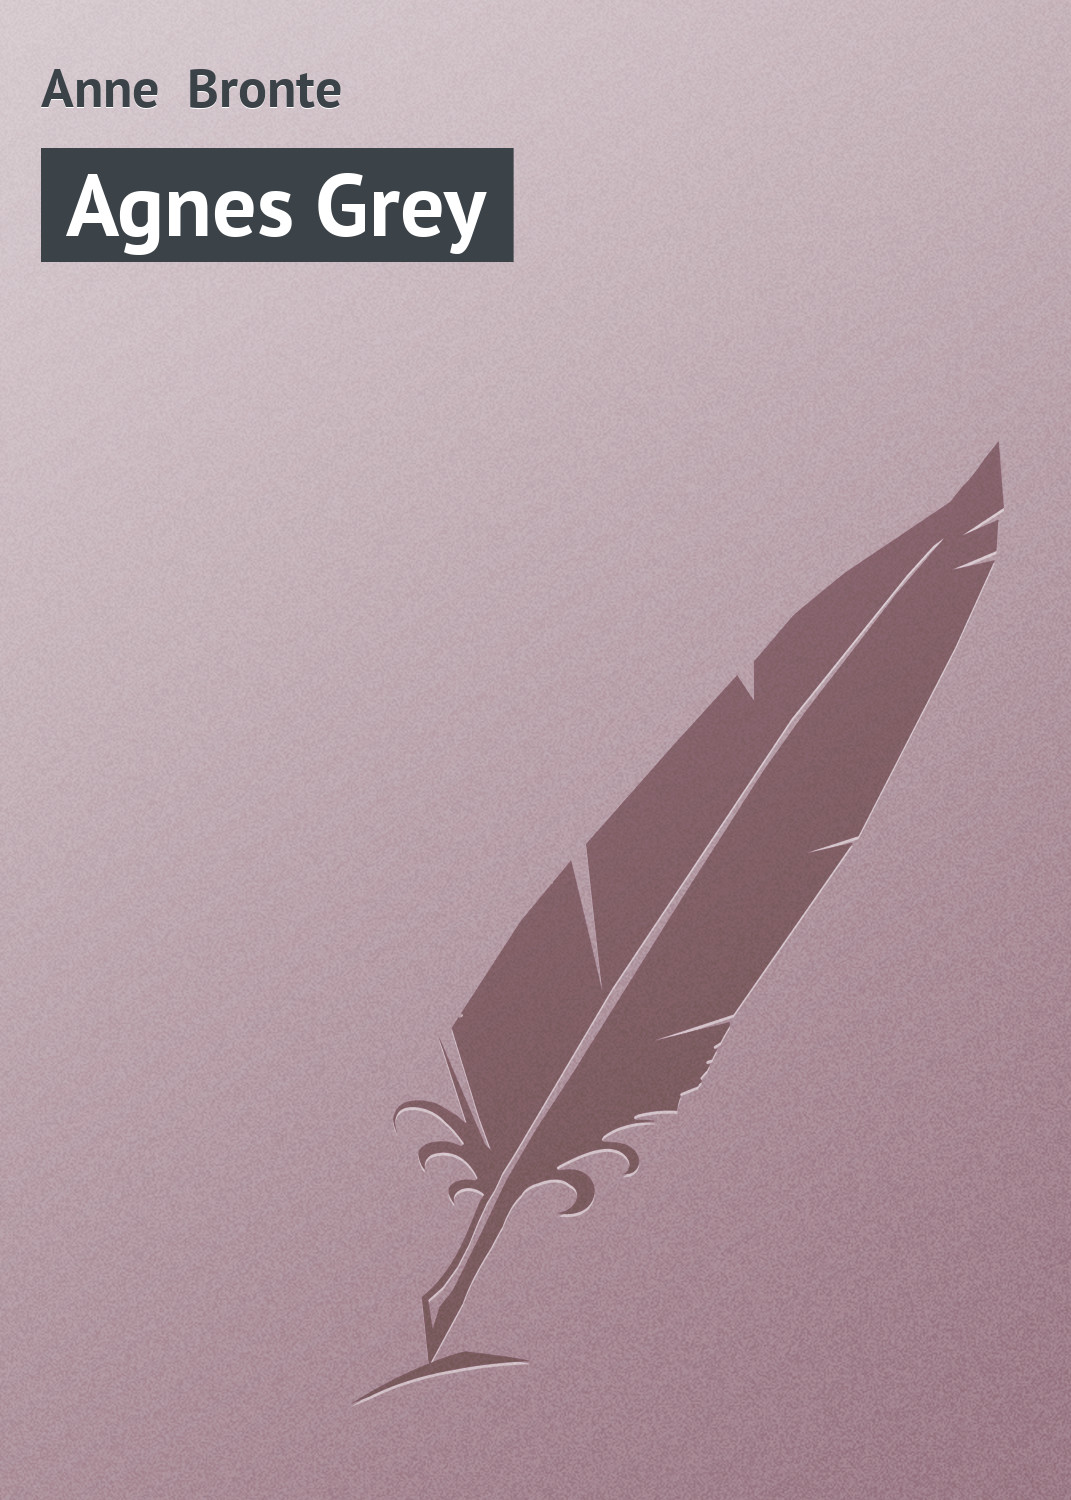 Книга Agnes Grey из серии , созданная Anne Bronte, может относится к жанру Зарубежная классика, Классическая проза. Стоимость электронной книги Agnes Grey с идентификатором 9962616 составляет 29.95 руб.